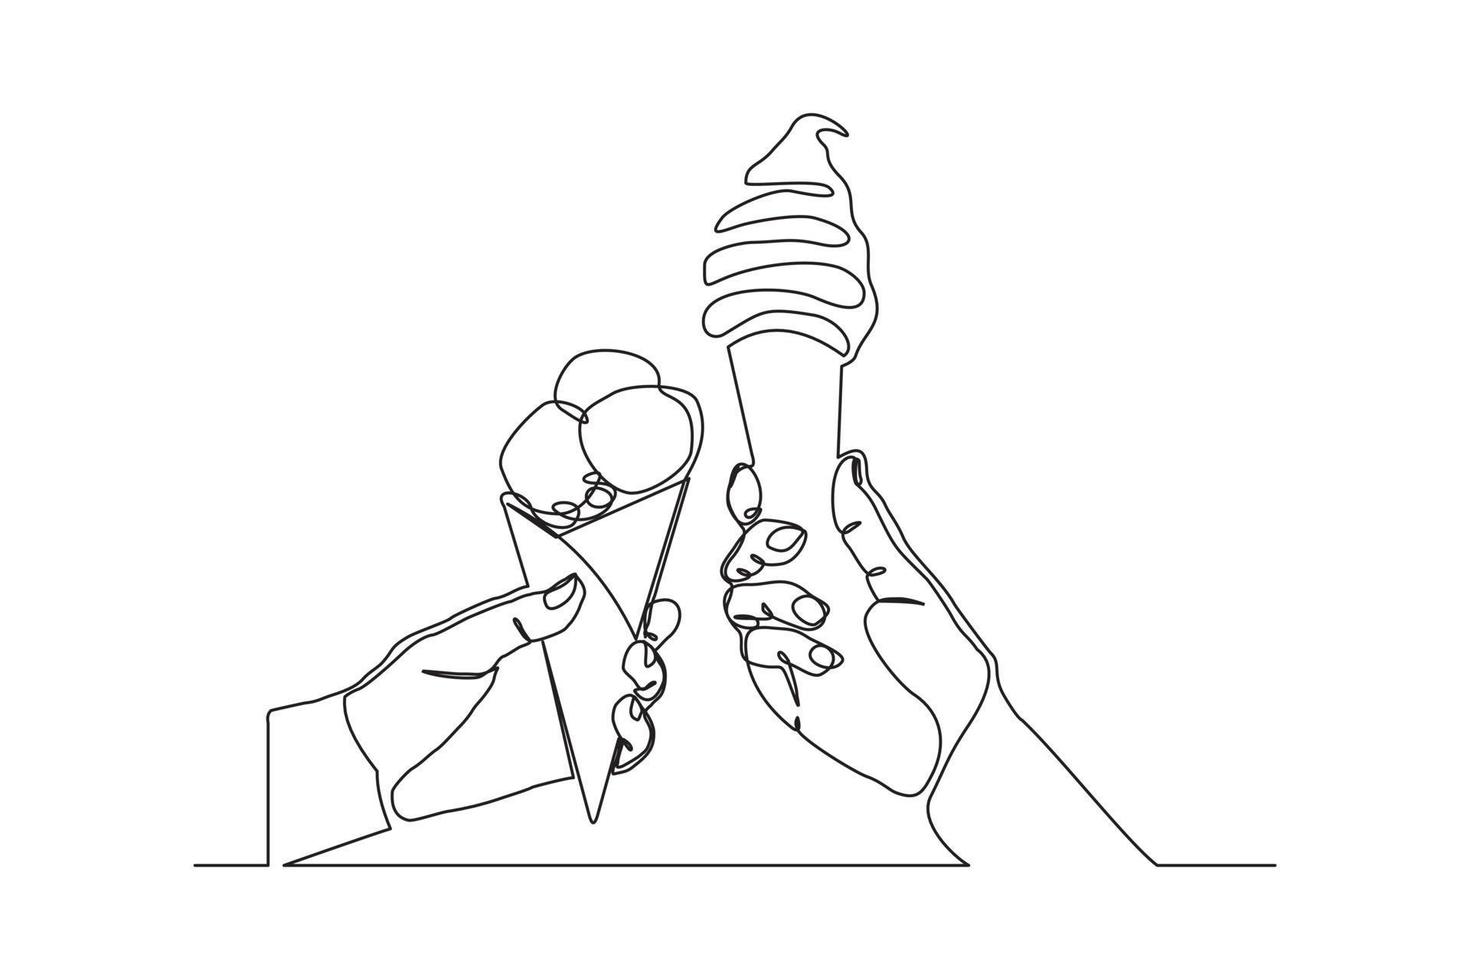 desenho de linha contínua com duas mãos e aplausos deliciosos frescos de casquinha de sorvete. arte única de uma linha de duas mãos segurando o deserto de sorvete doce. ilustração vetorial vetor